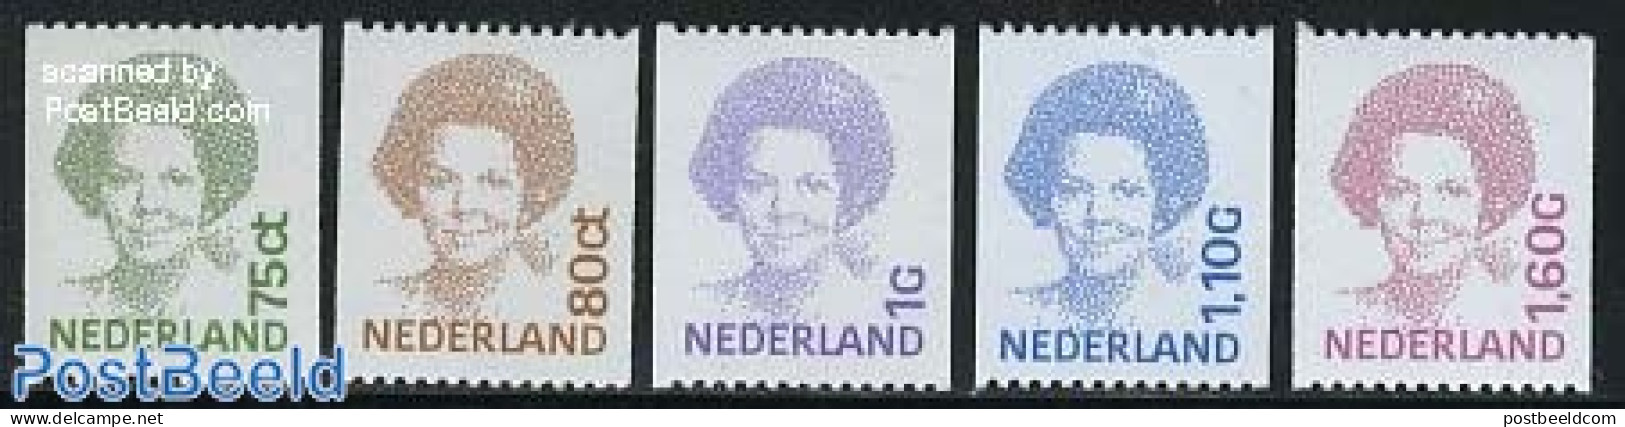 Netherlands 1991 Definitives, Coil Stamps 5v, Mint NH - Nuevos